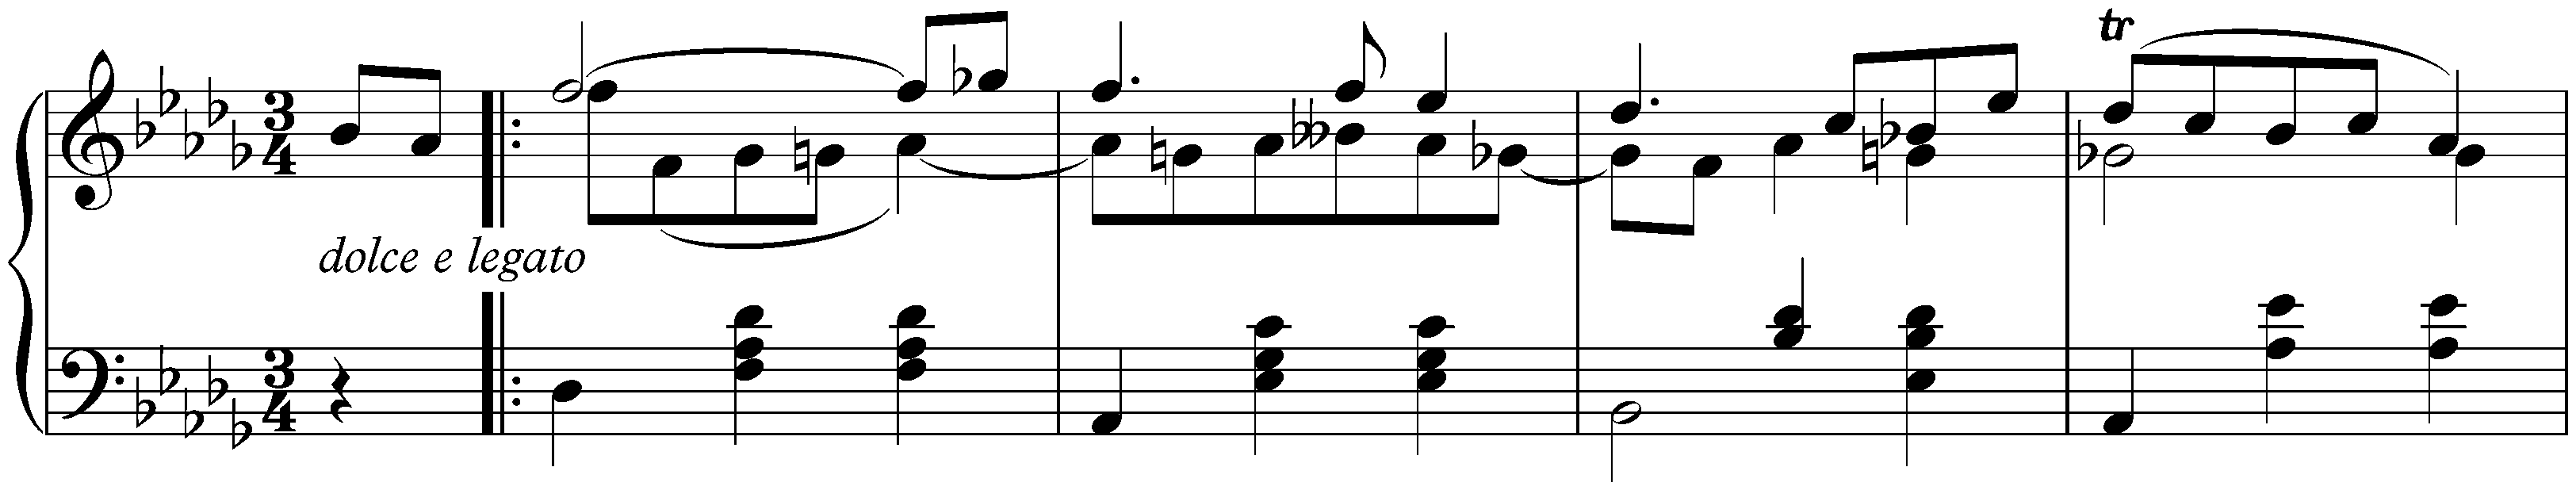 Three Valses, op. 70; 3. D-flat major